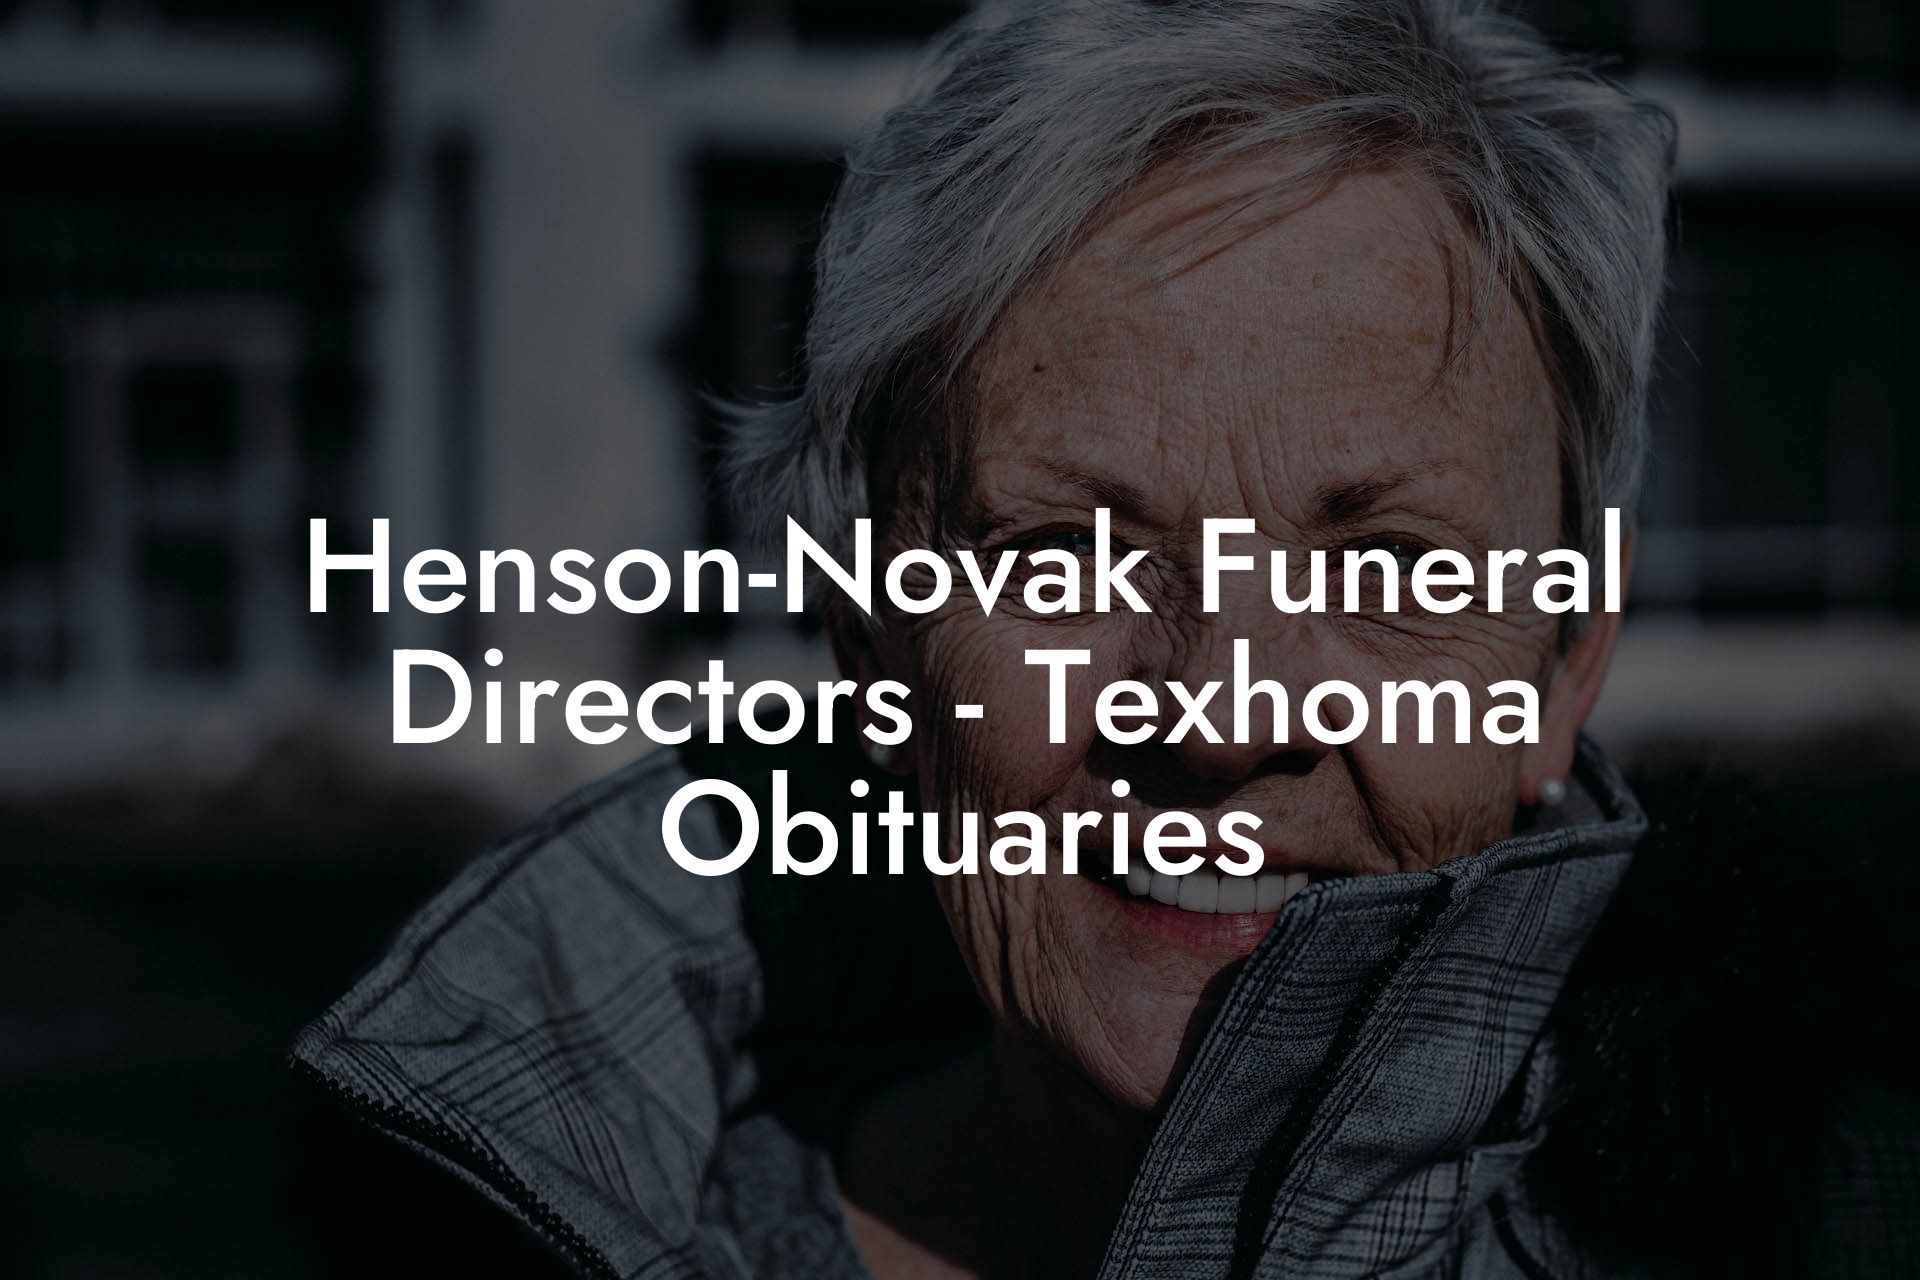 Henson-Novak Funeral Directors - Texhoma Obituaries